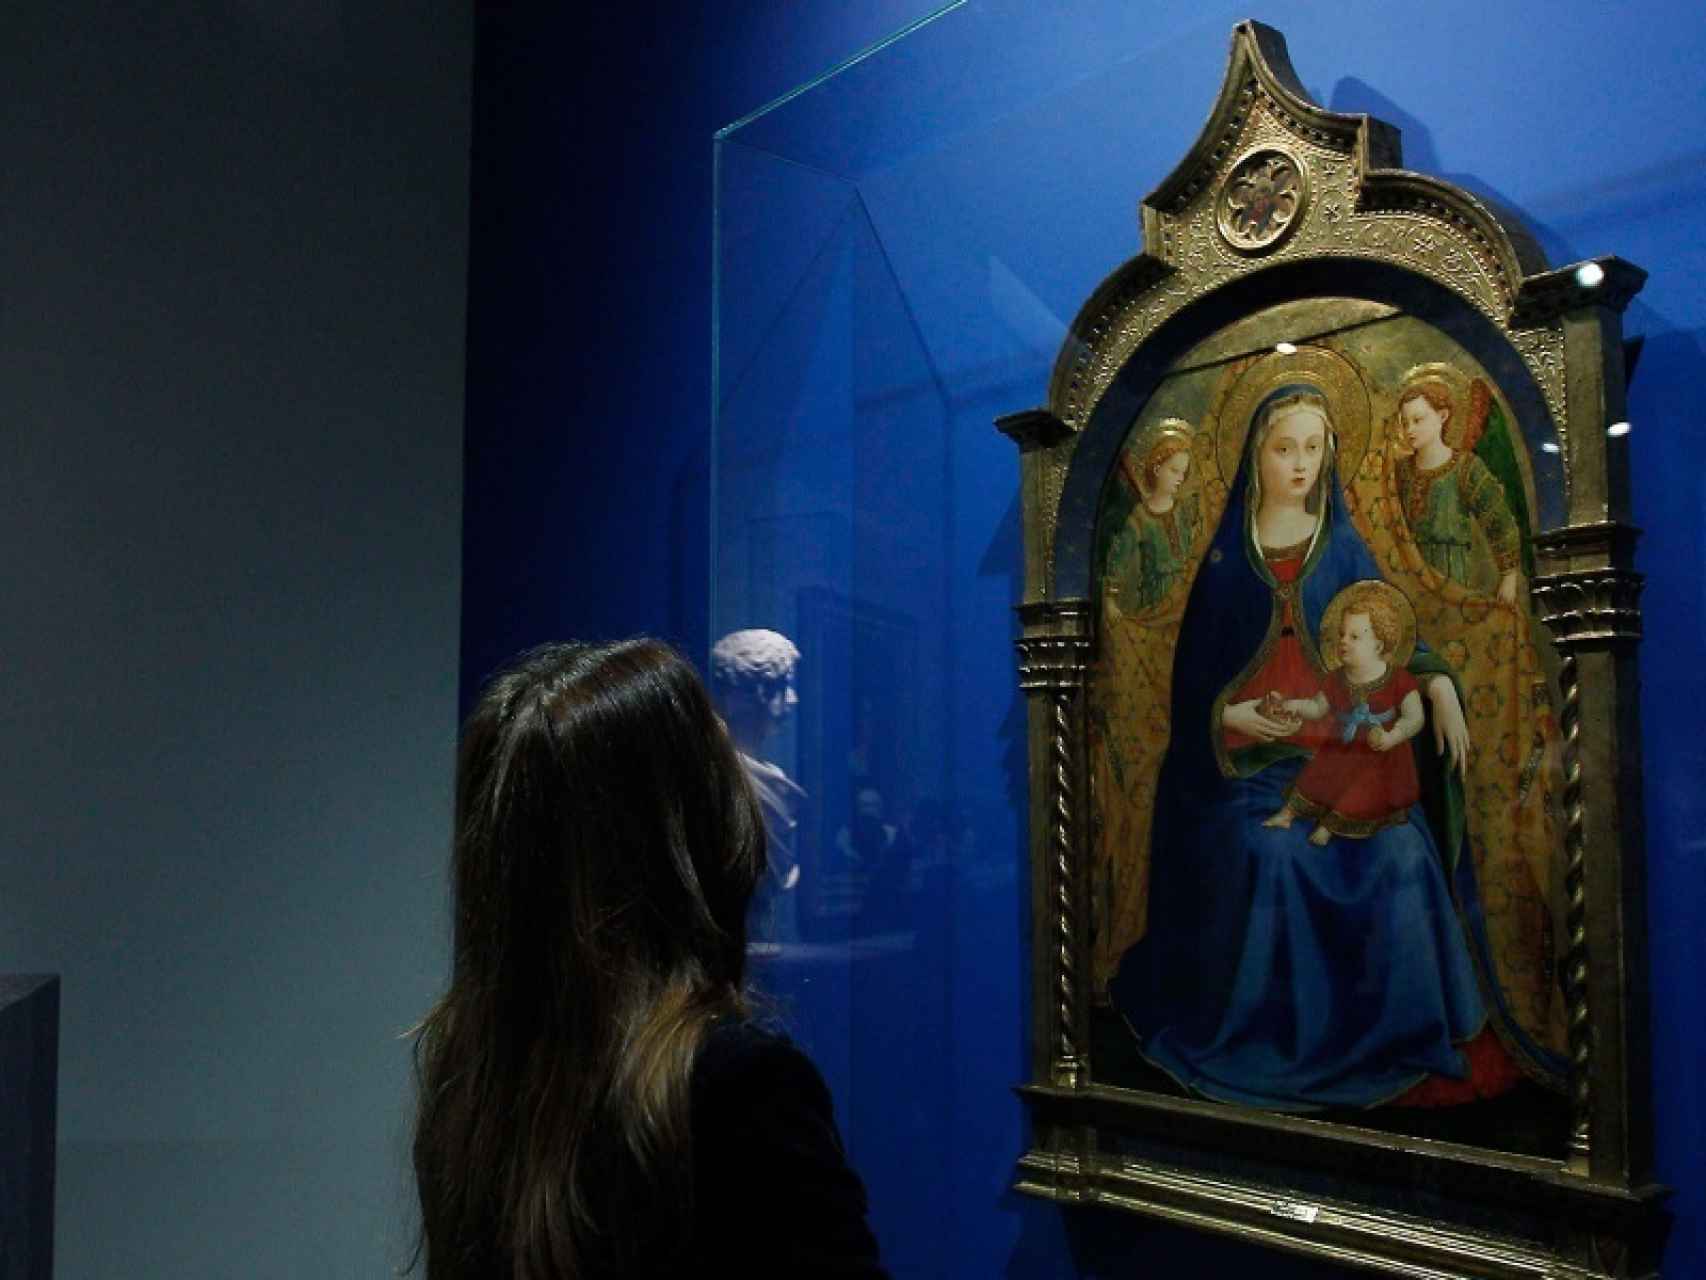 La joya de Fra Angelico durante su exposición en el CentroCentro Cibeles.